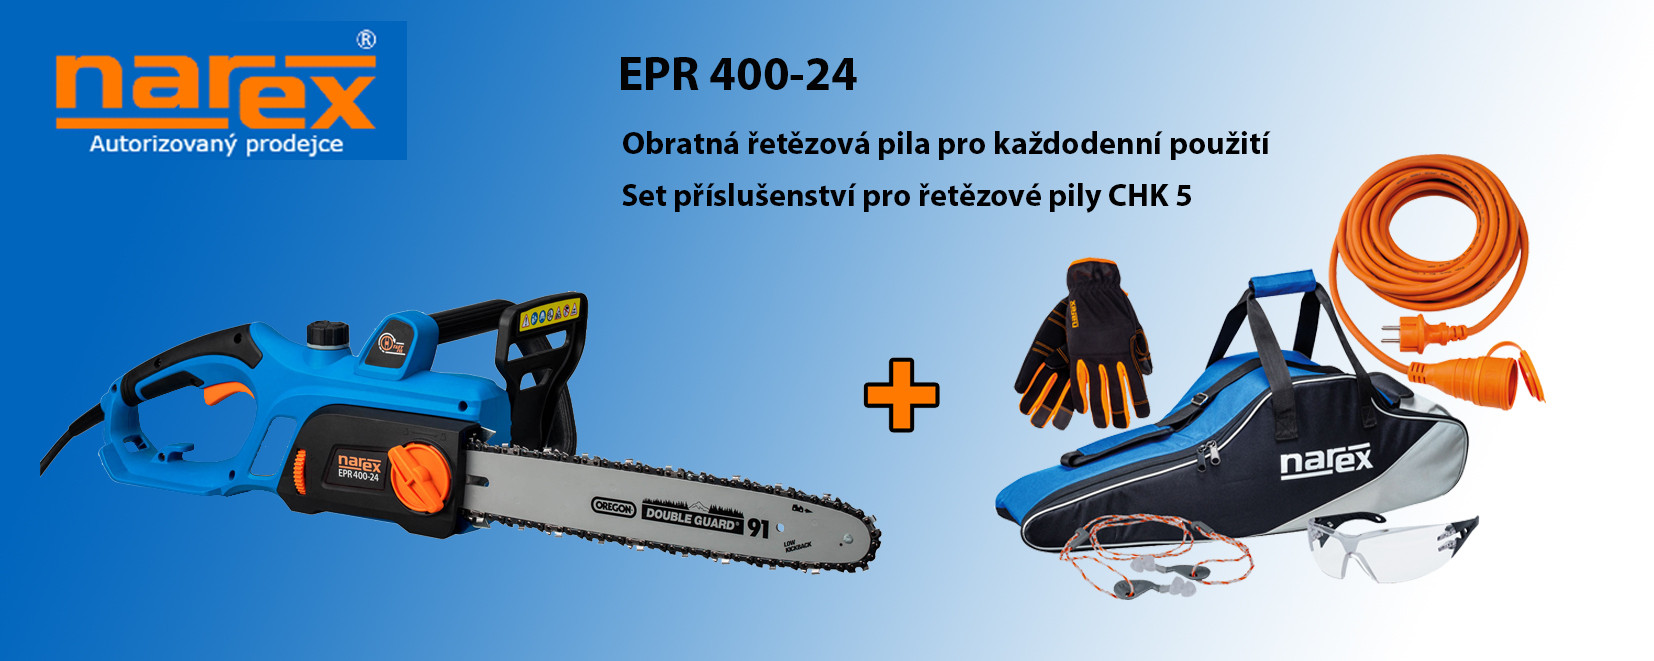 EPR 400-24